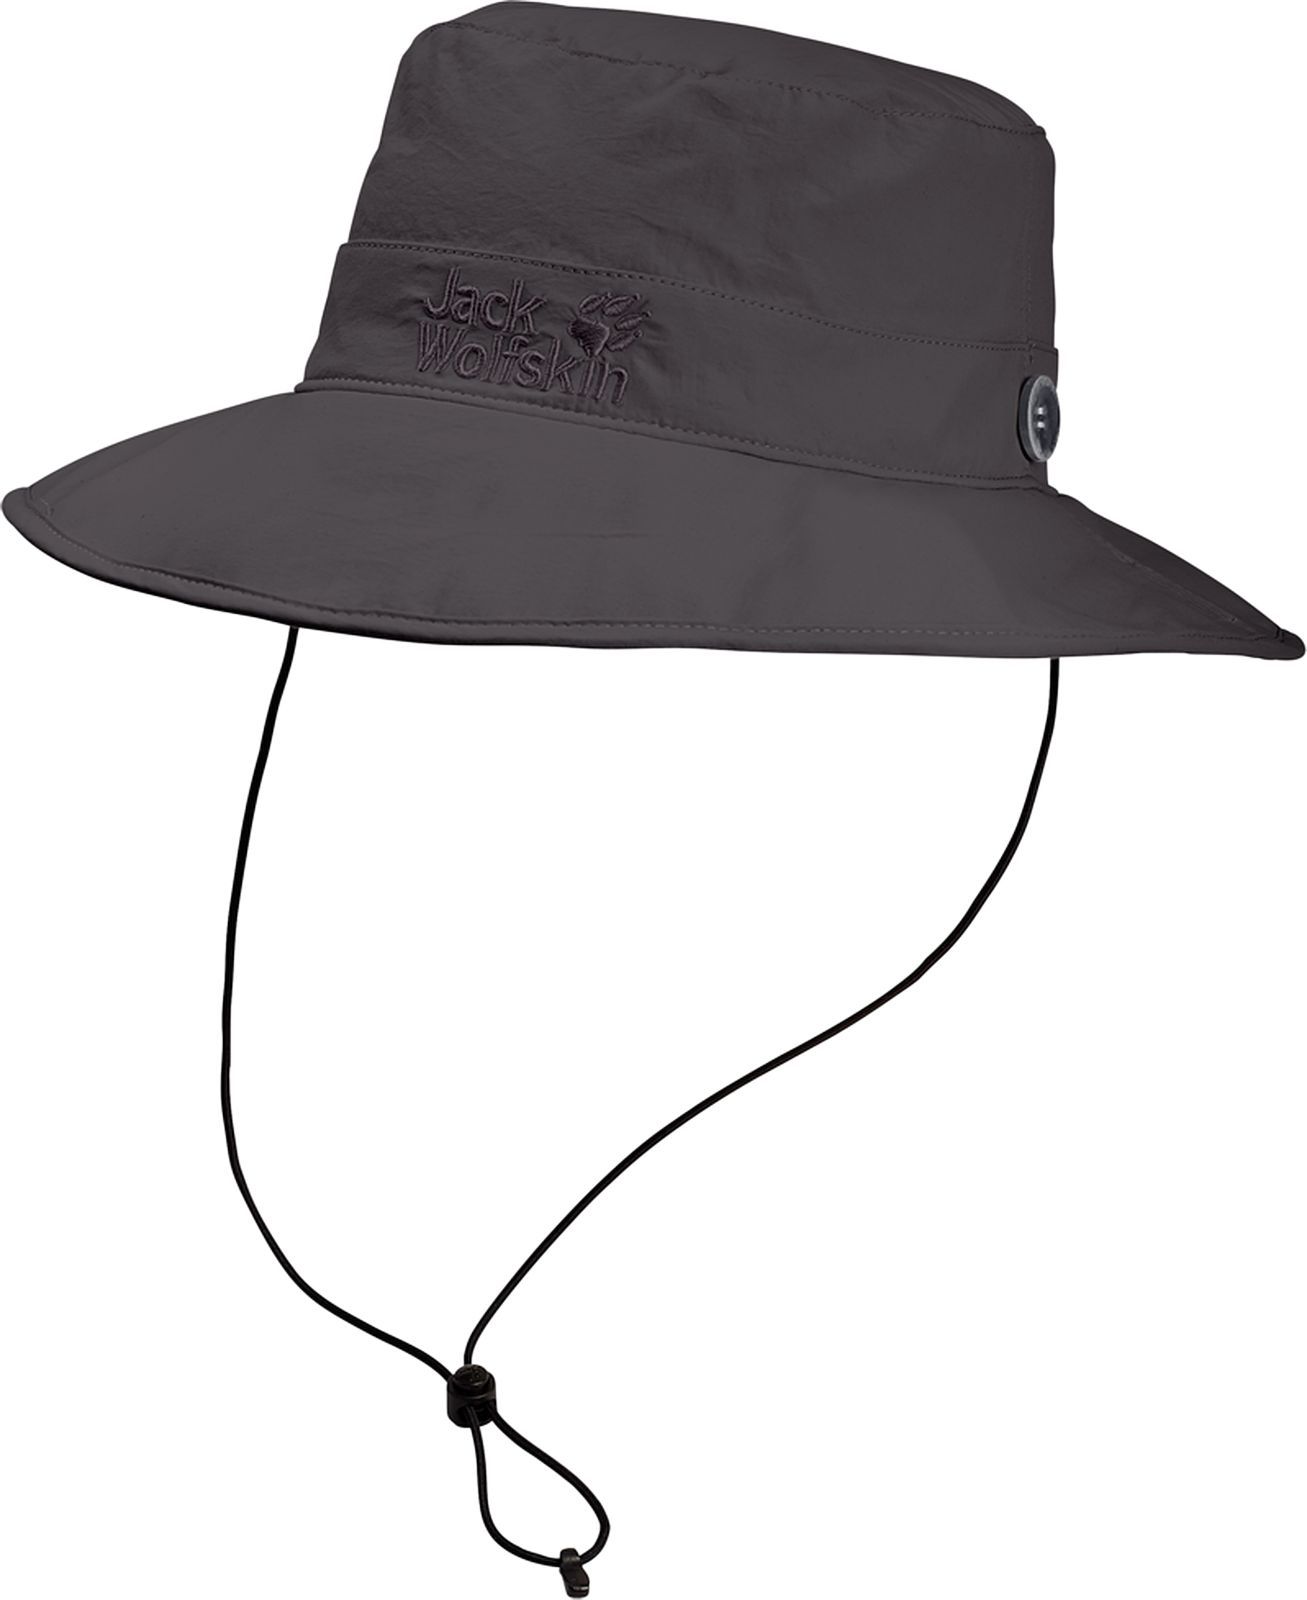  Jack Wolfskin Supplex Mesh Hat, : -. 1902042-6032.  M (54/57)